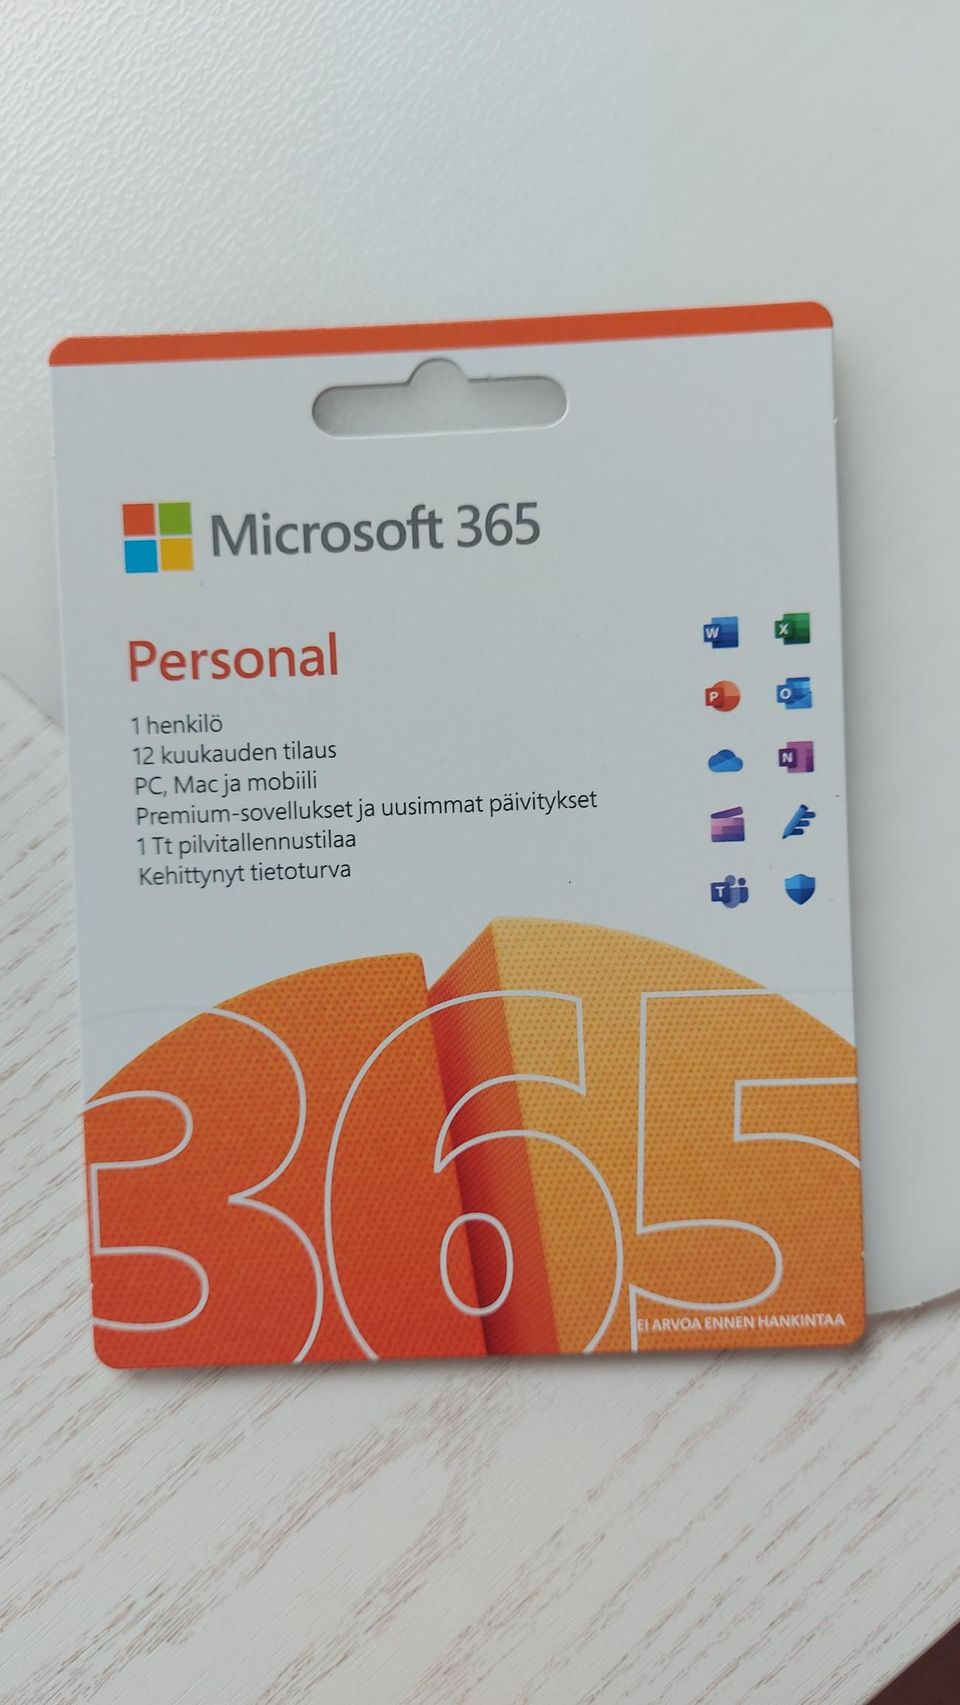 Windows 365 12kk tilaus